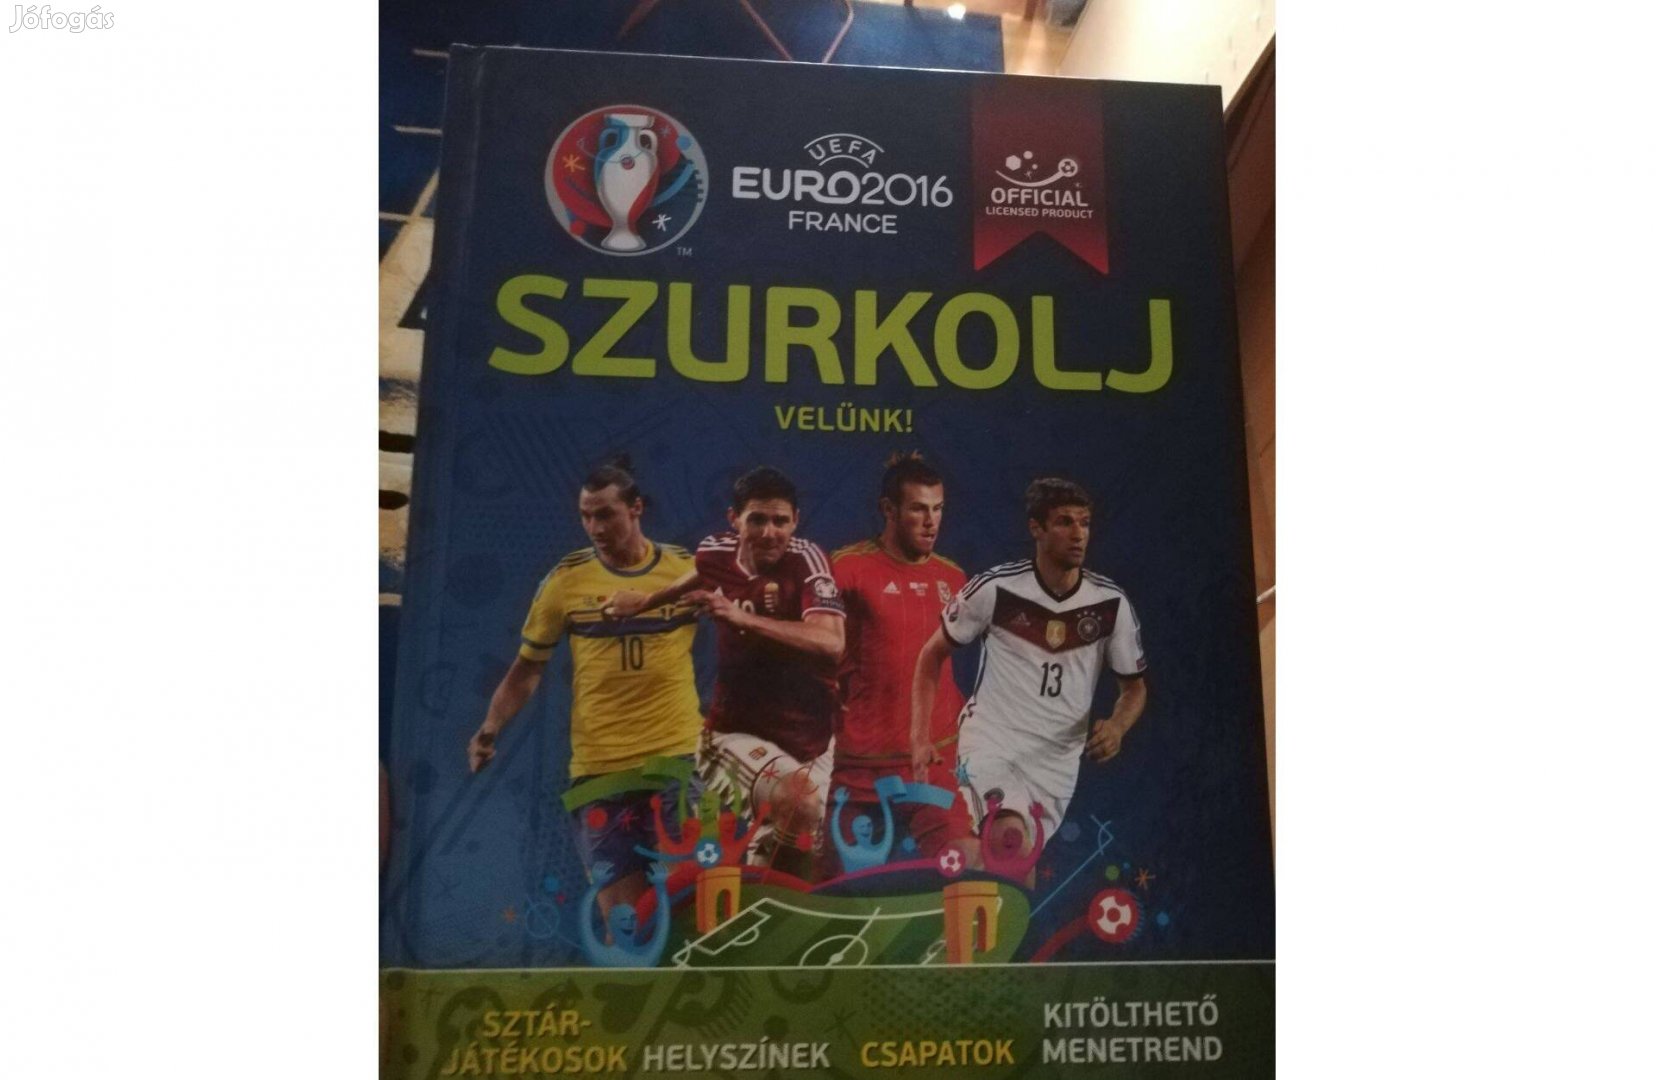 Euro 2016, France Szurkolj velünk! c. füzet 800 forintért eladó